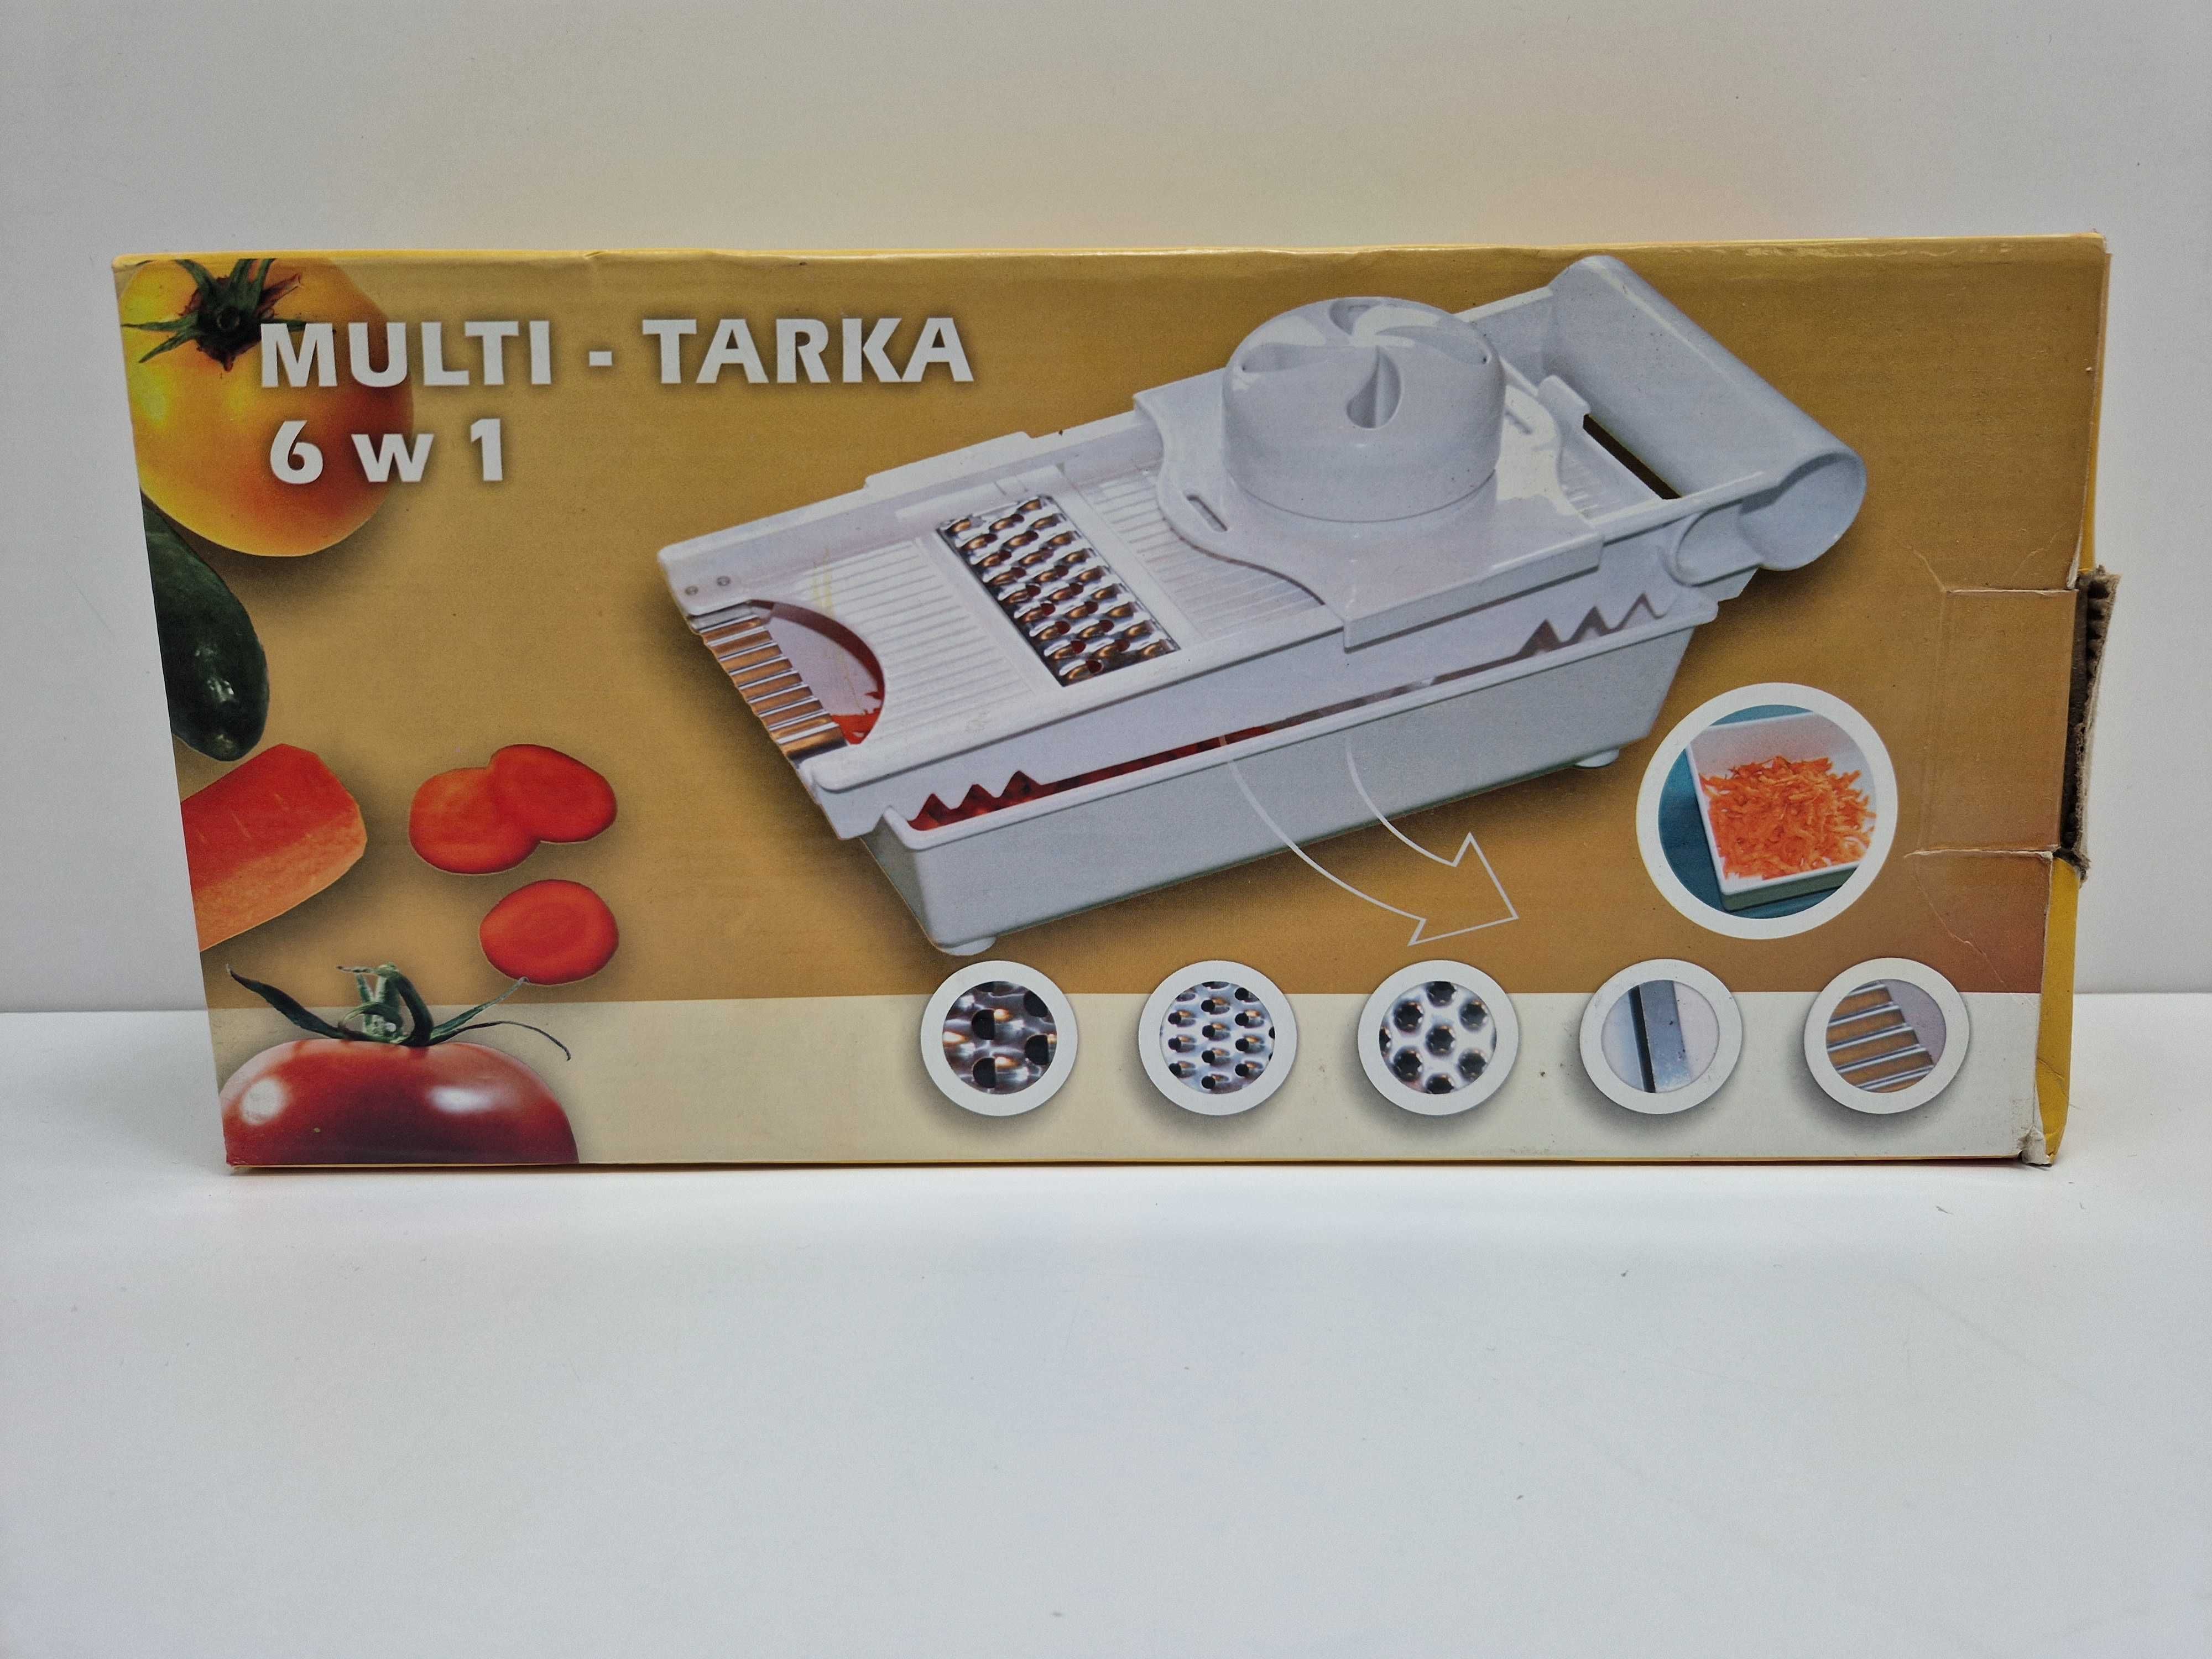 Multi - Tarka 6w1